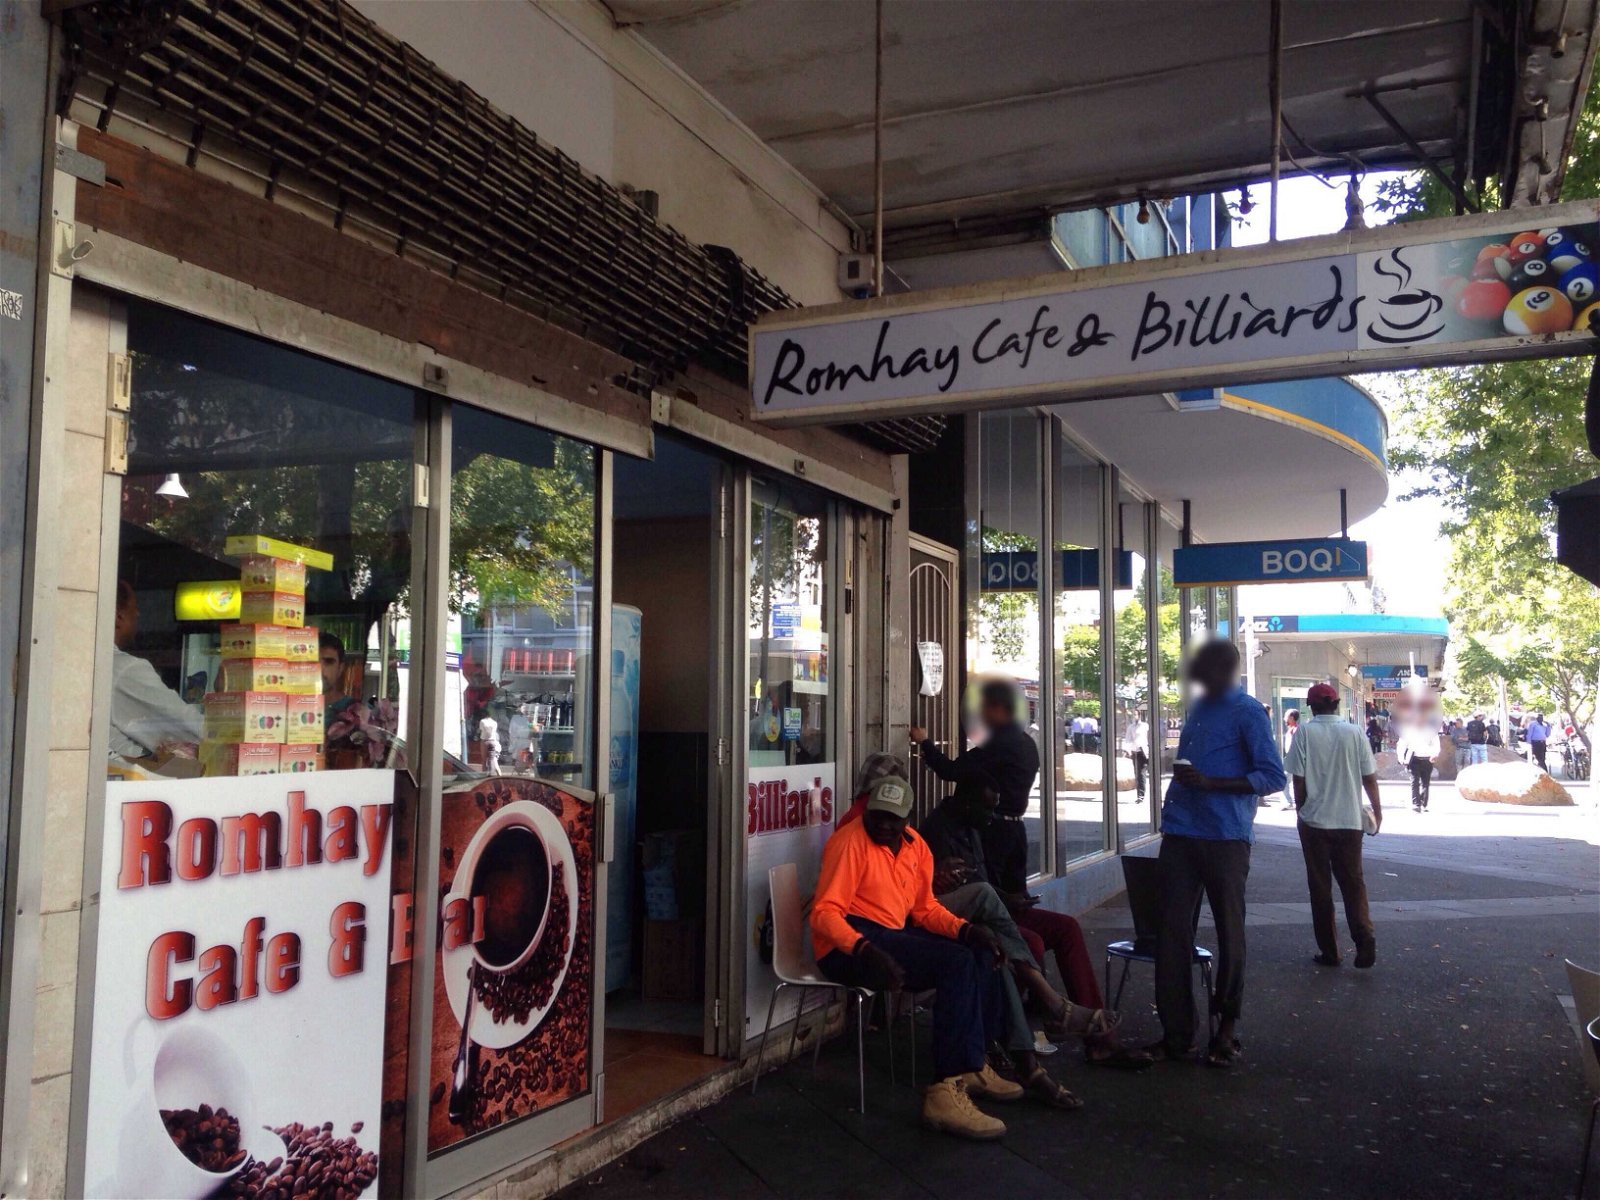 Romhay Cafe - Pubs Sydney